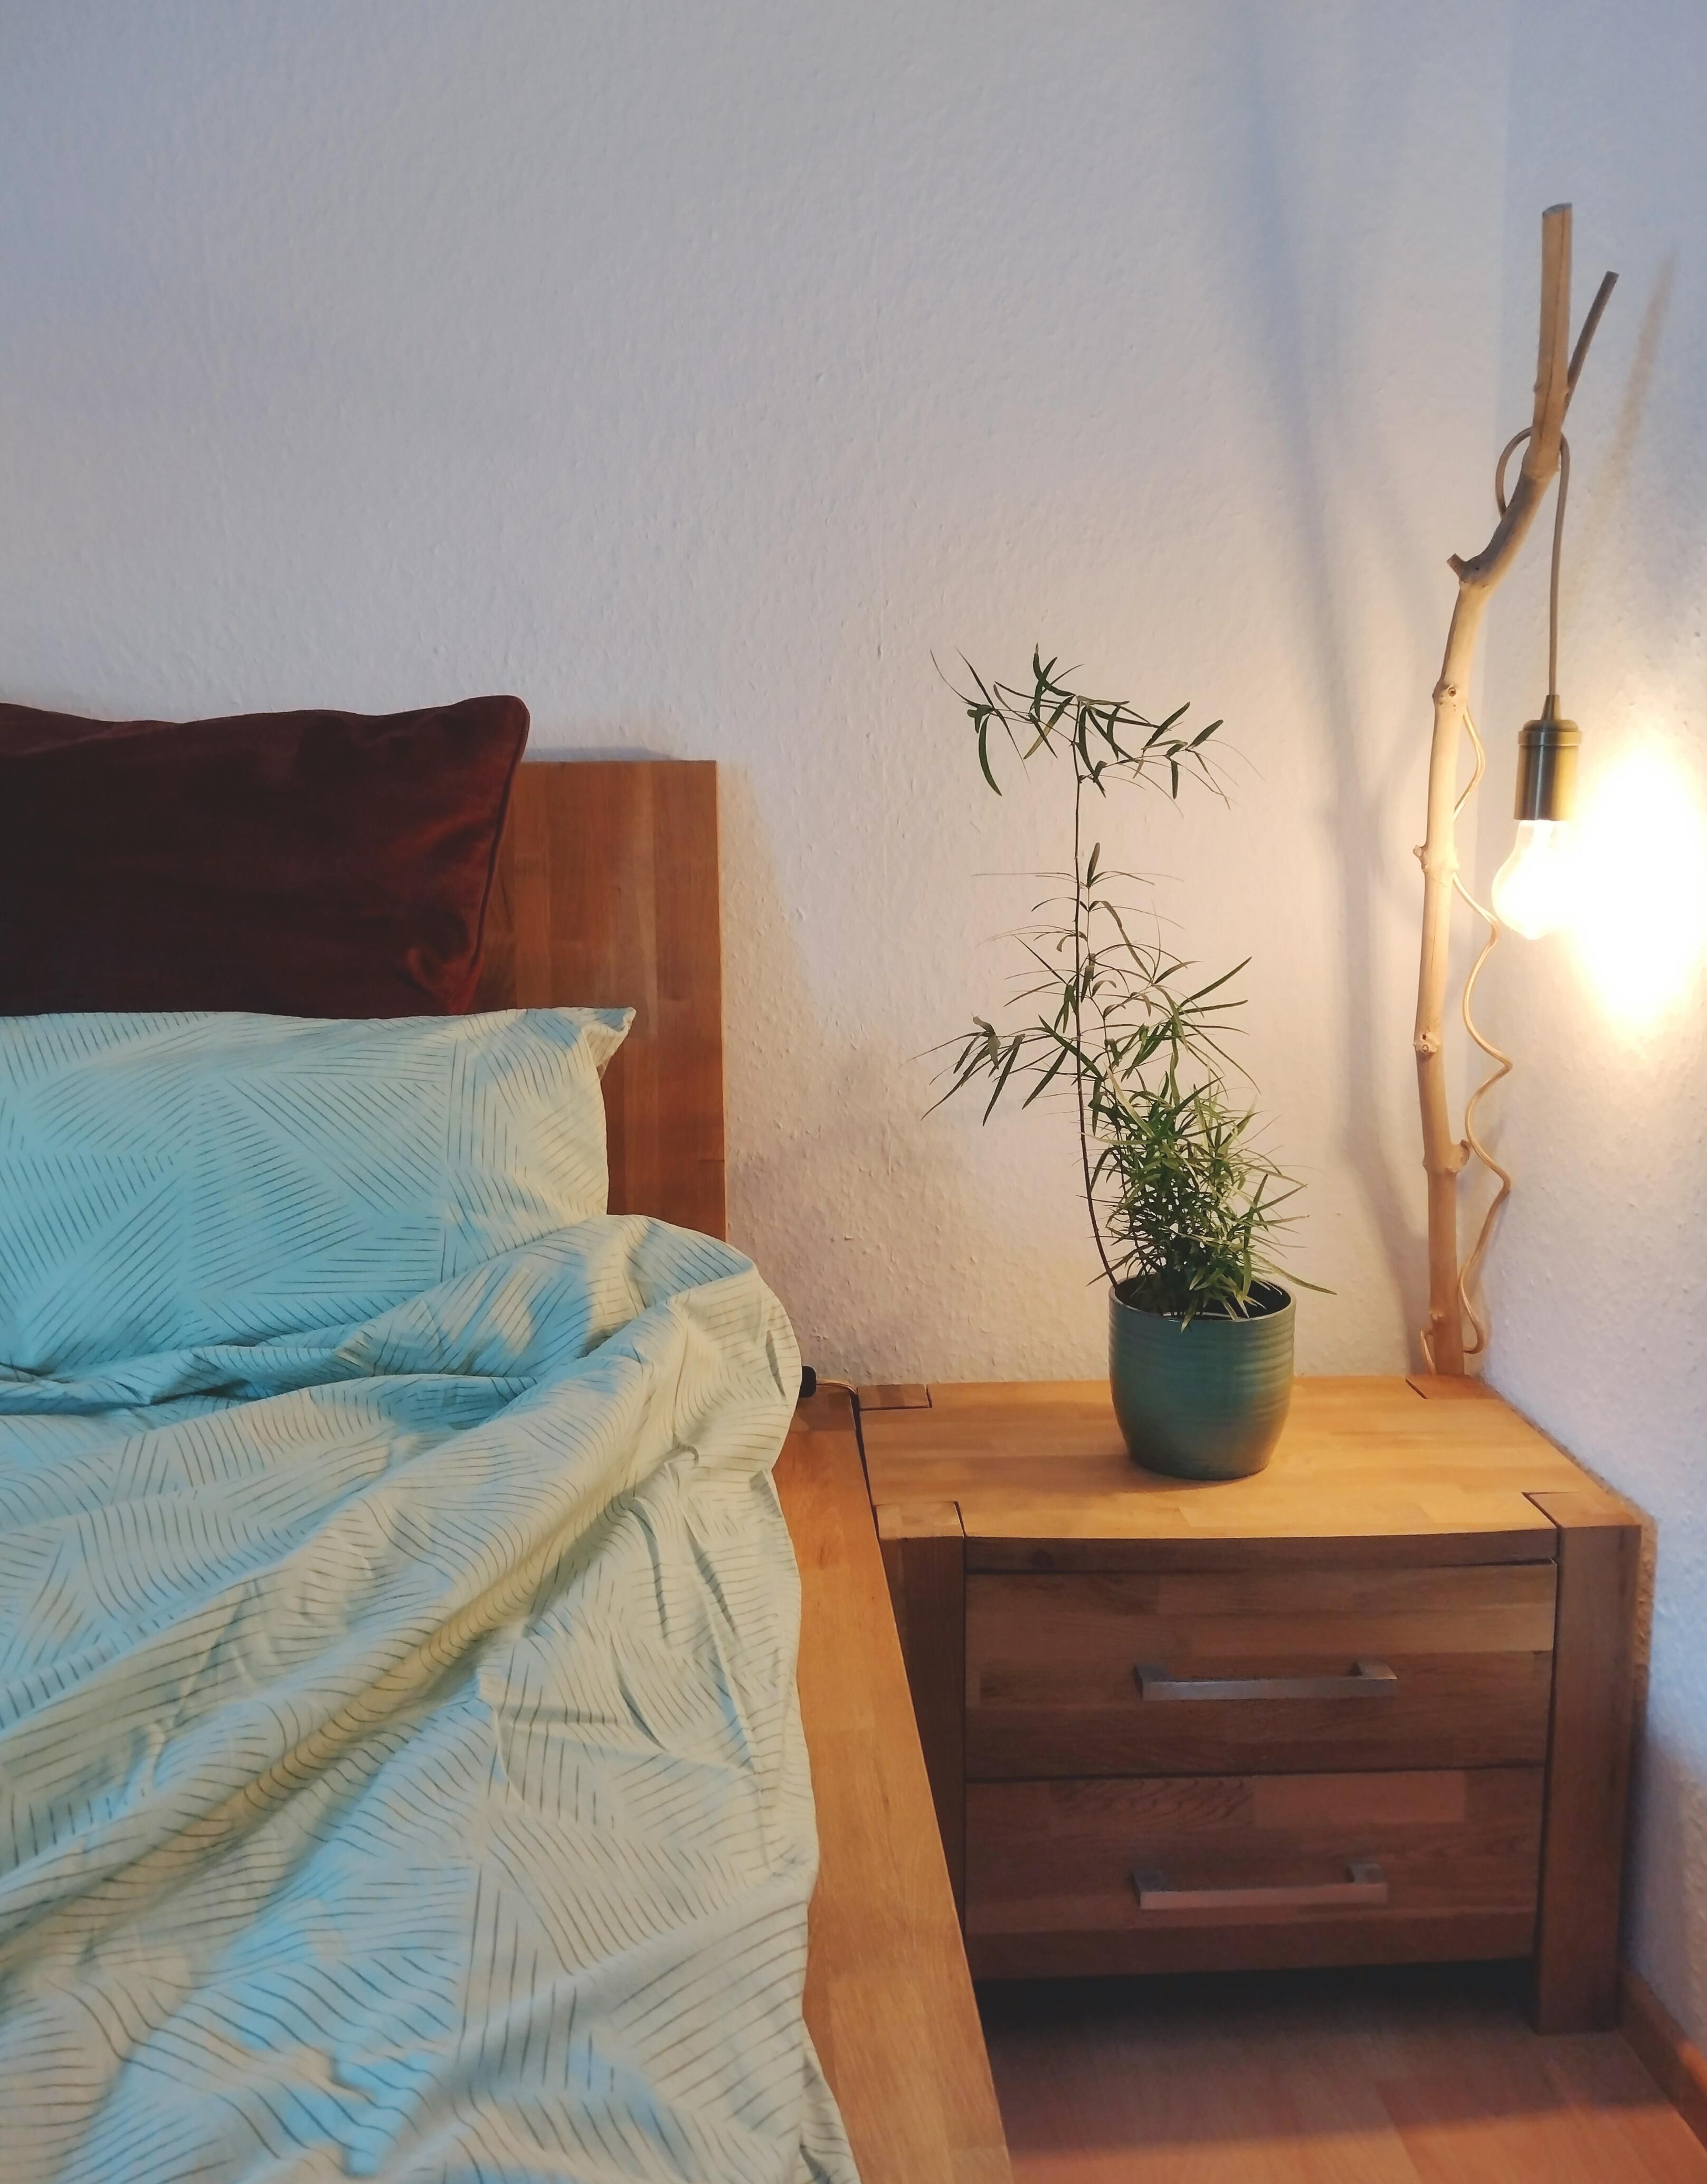 #schlafzimmer #details #bettwäsche #licht #nachttisch #grünpflanze #ast #natürlich #holz #holzmöbel #eiche